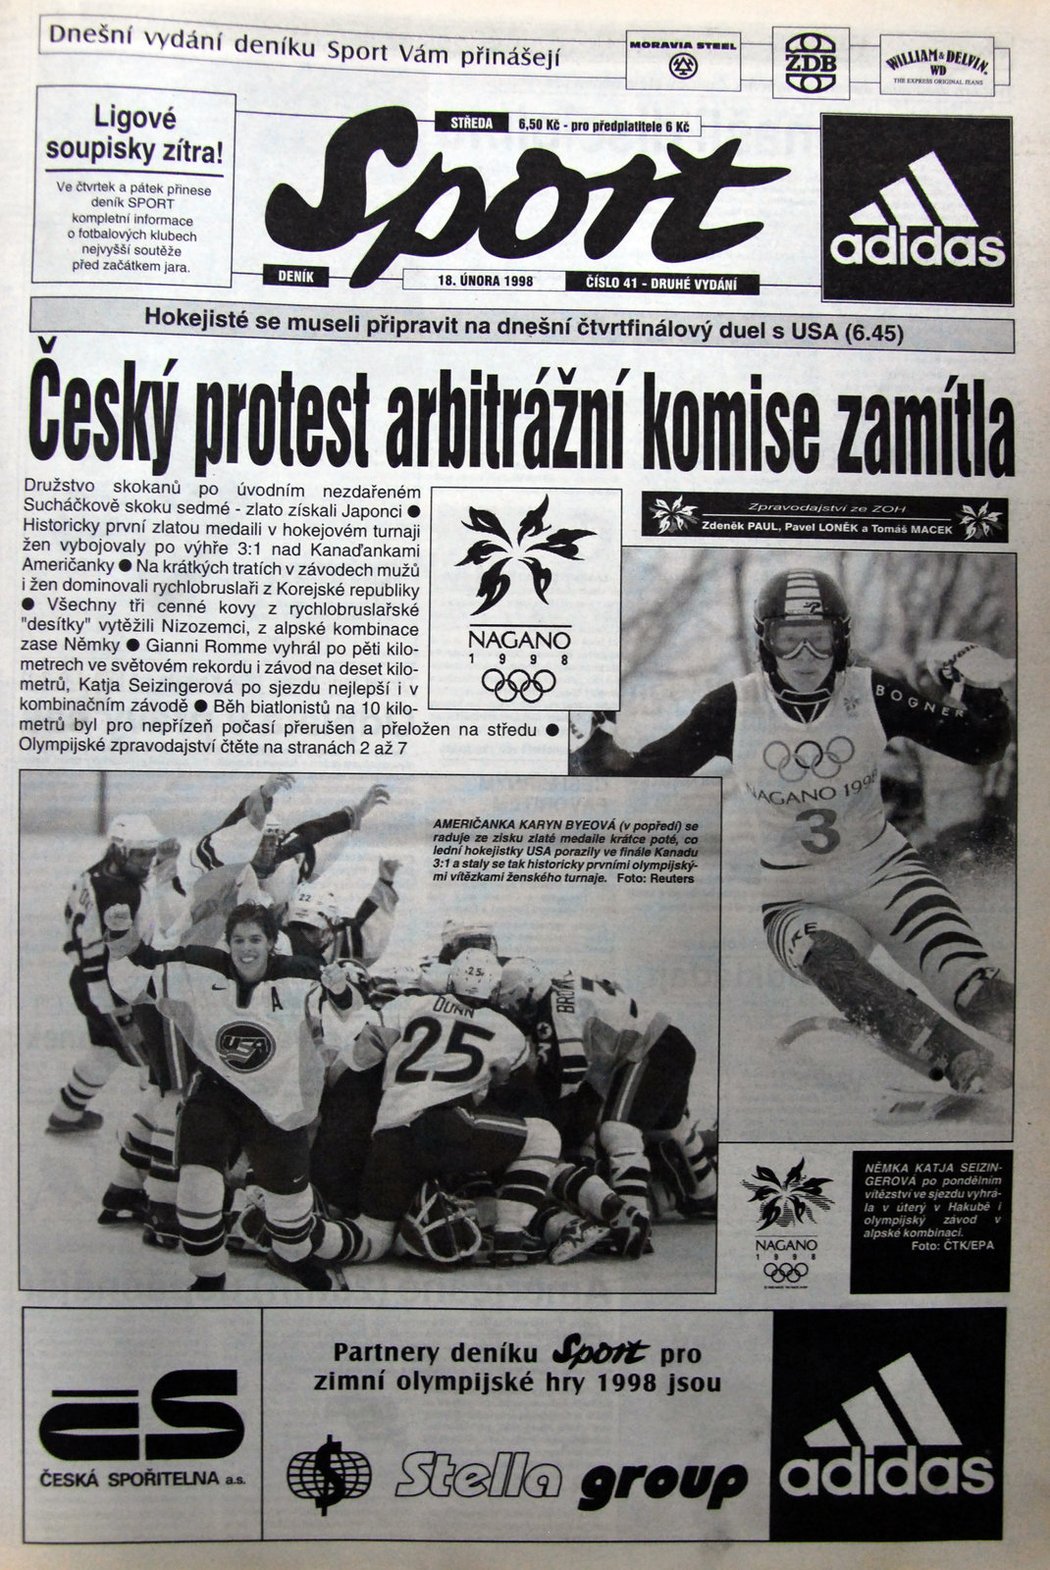 18. 2. 1998 - Titulní strana